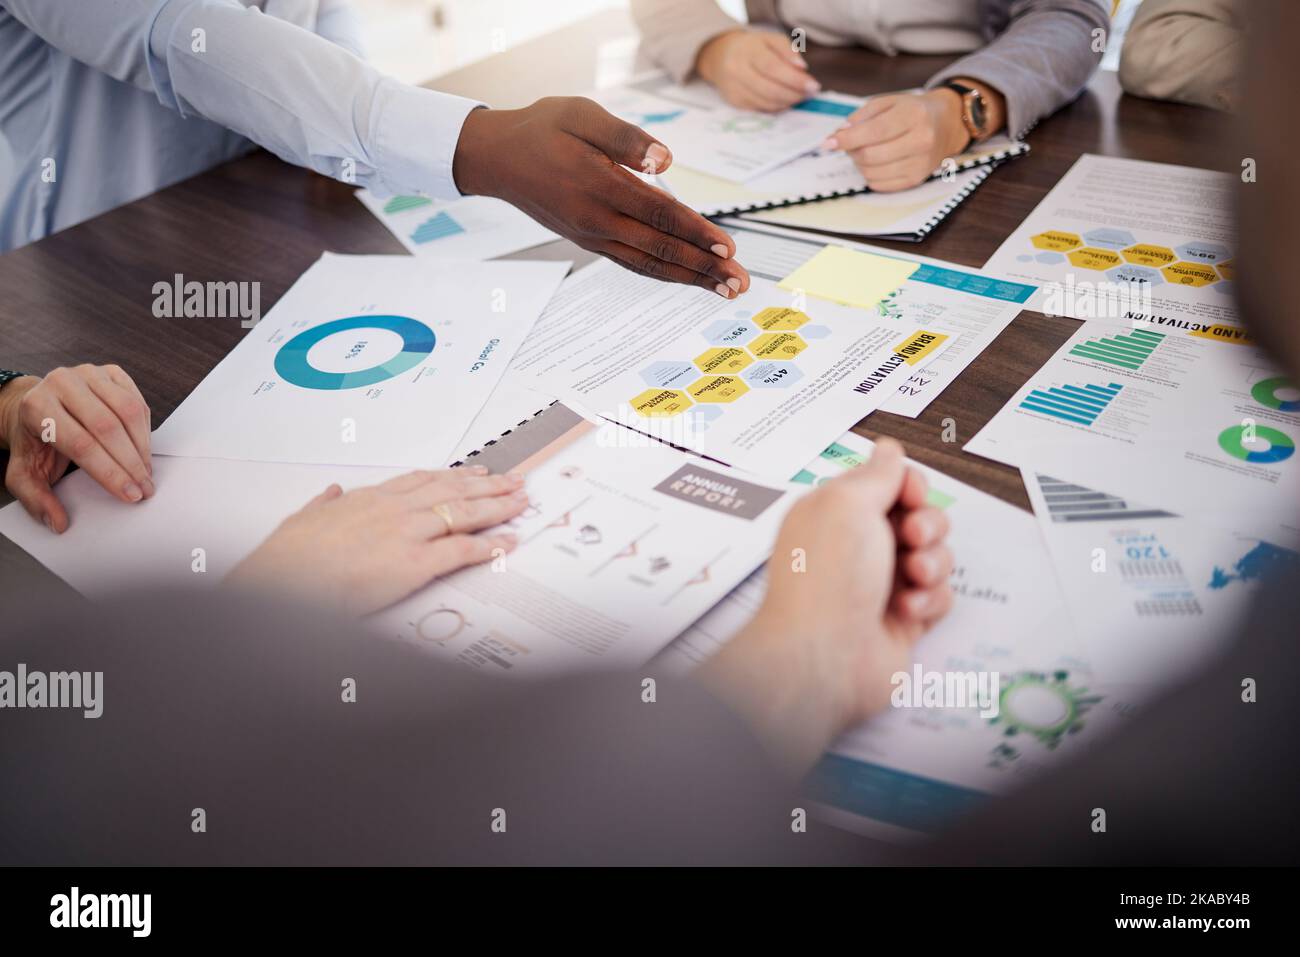 Les mains, les finances et les gens d'affaires dans une réunion avec le graphique, le graphique et les documents dans le bureau. Statistiques de marketing numérique, papier et manuel avec l'équipe Banque D'Images